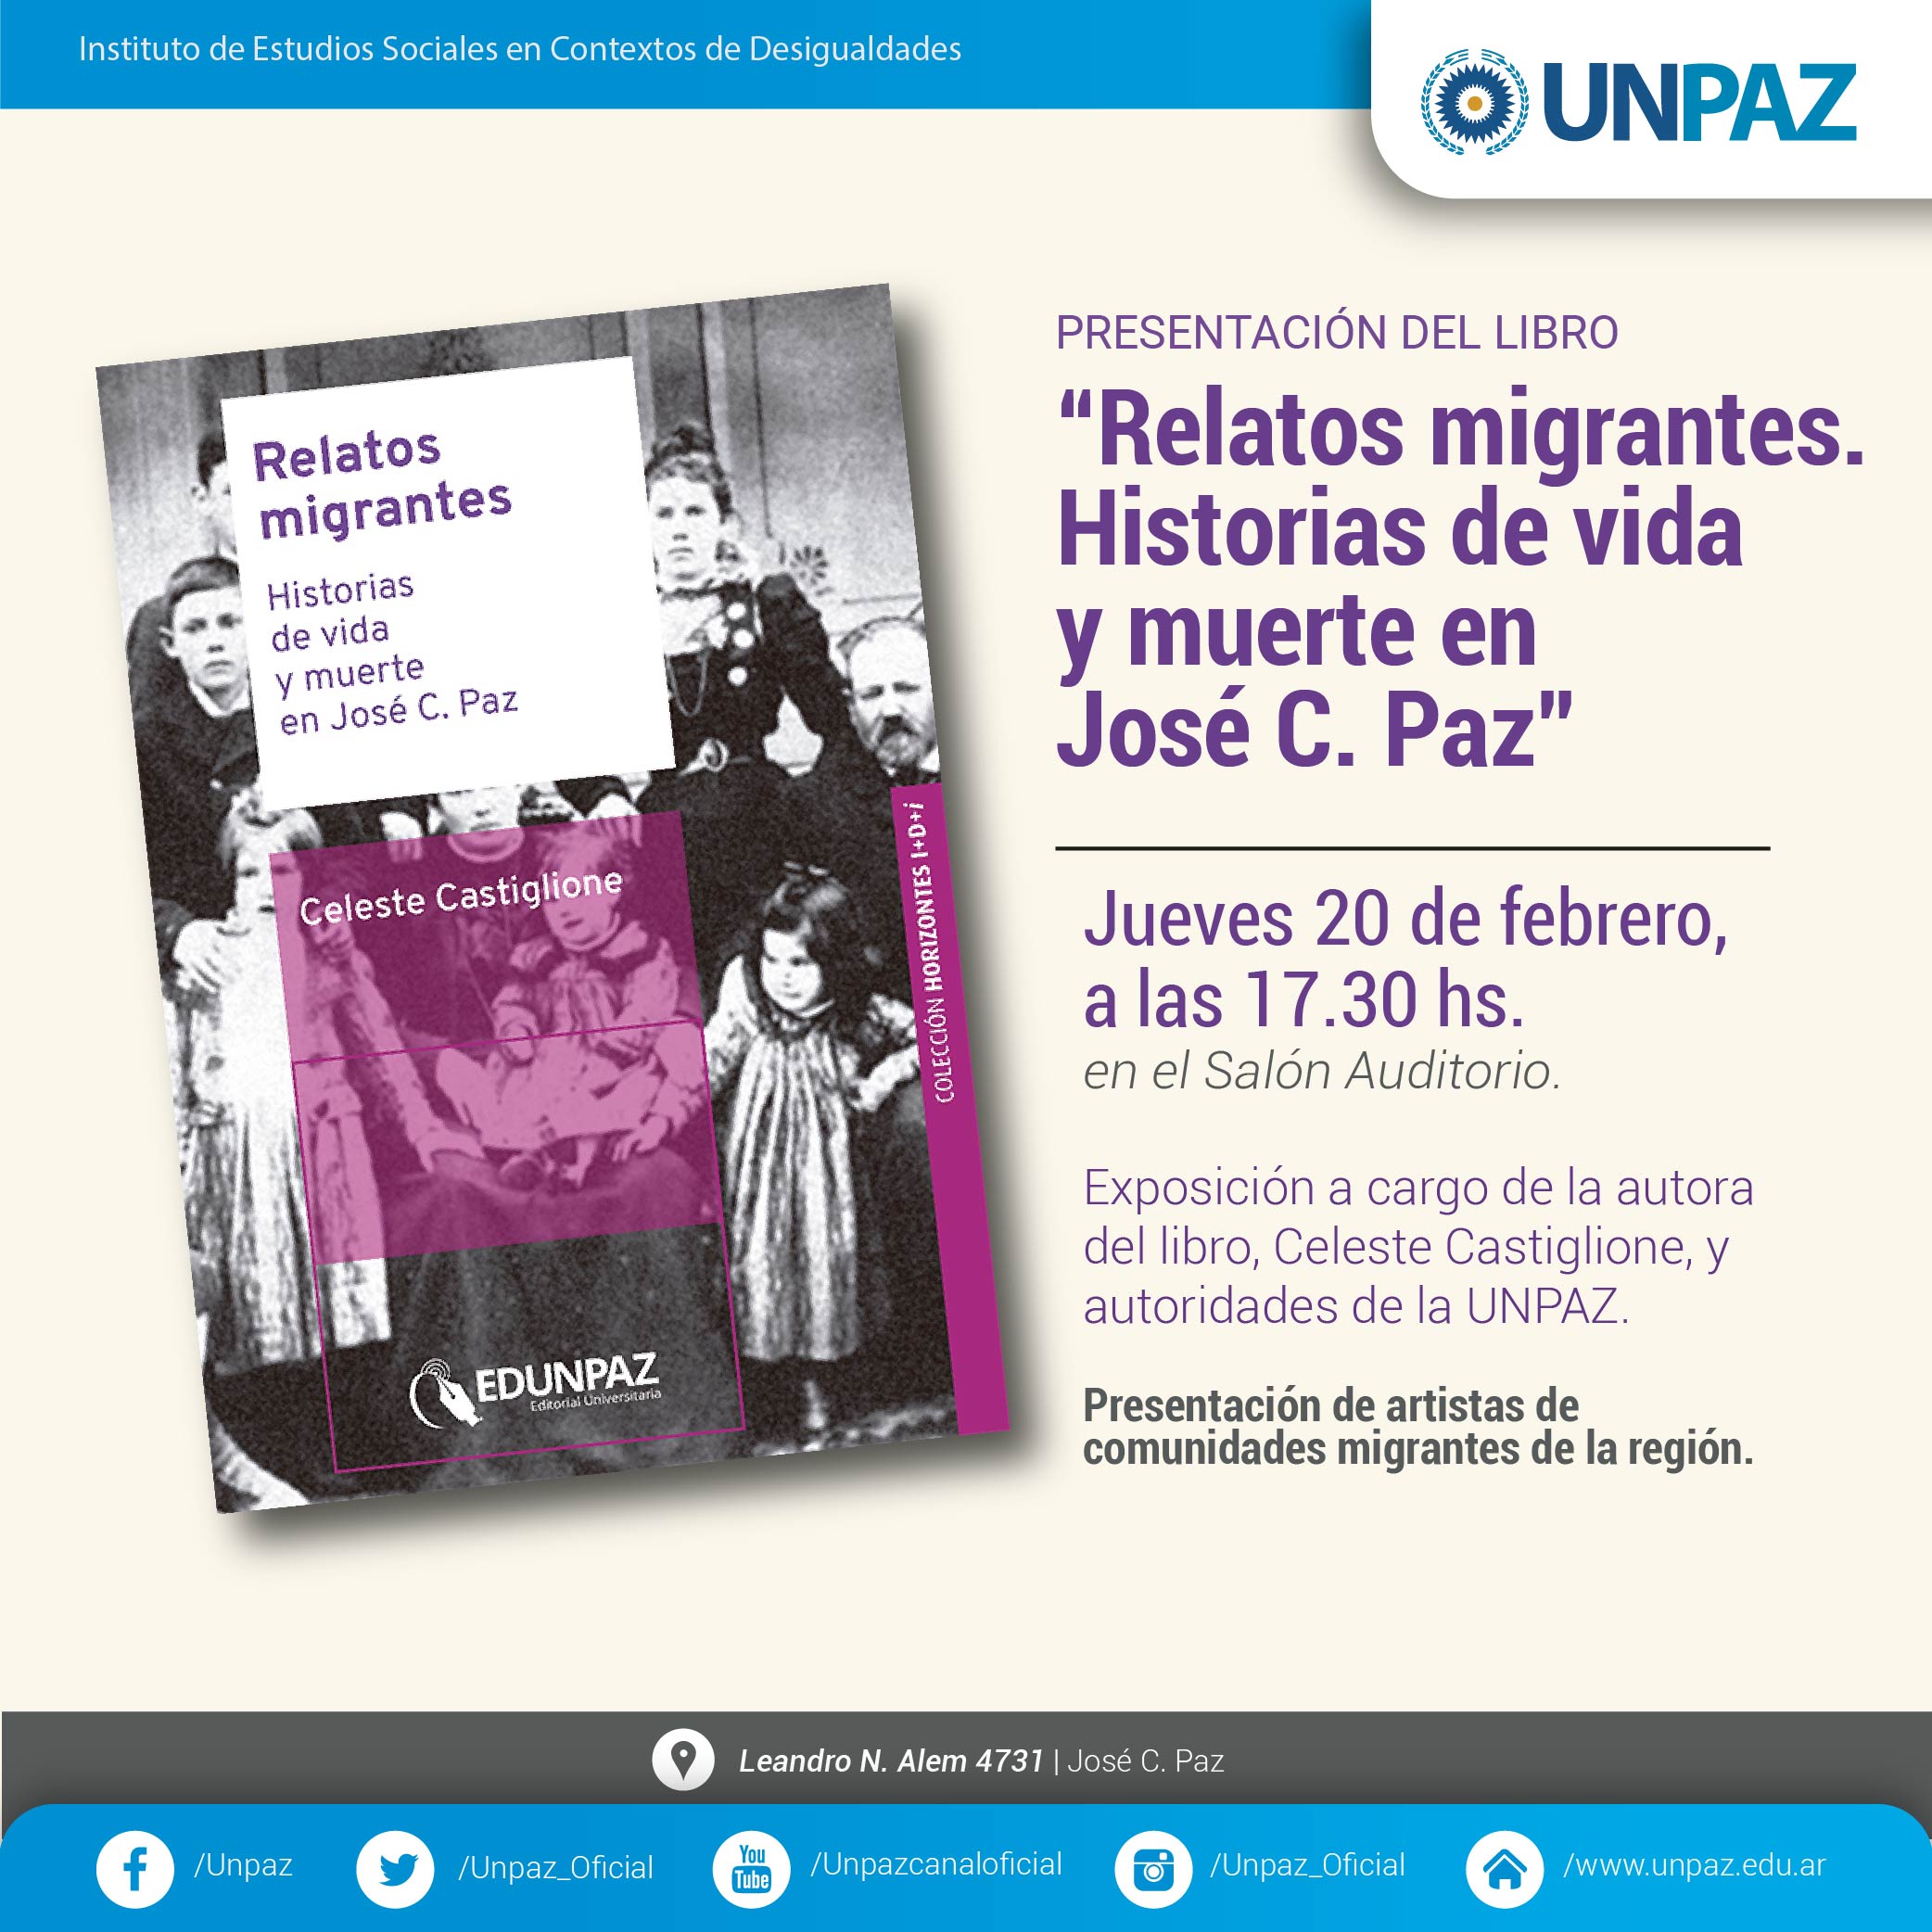 Presentación del libro "Relatos migrantes. Historias de vida y muerte en José C. Paz"